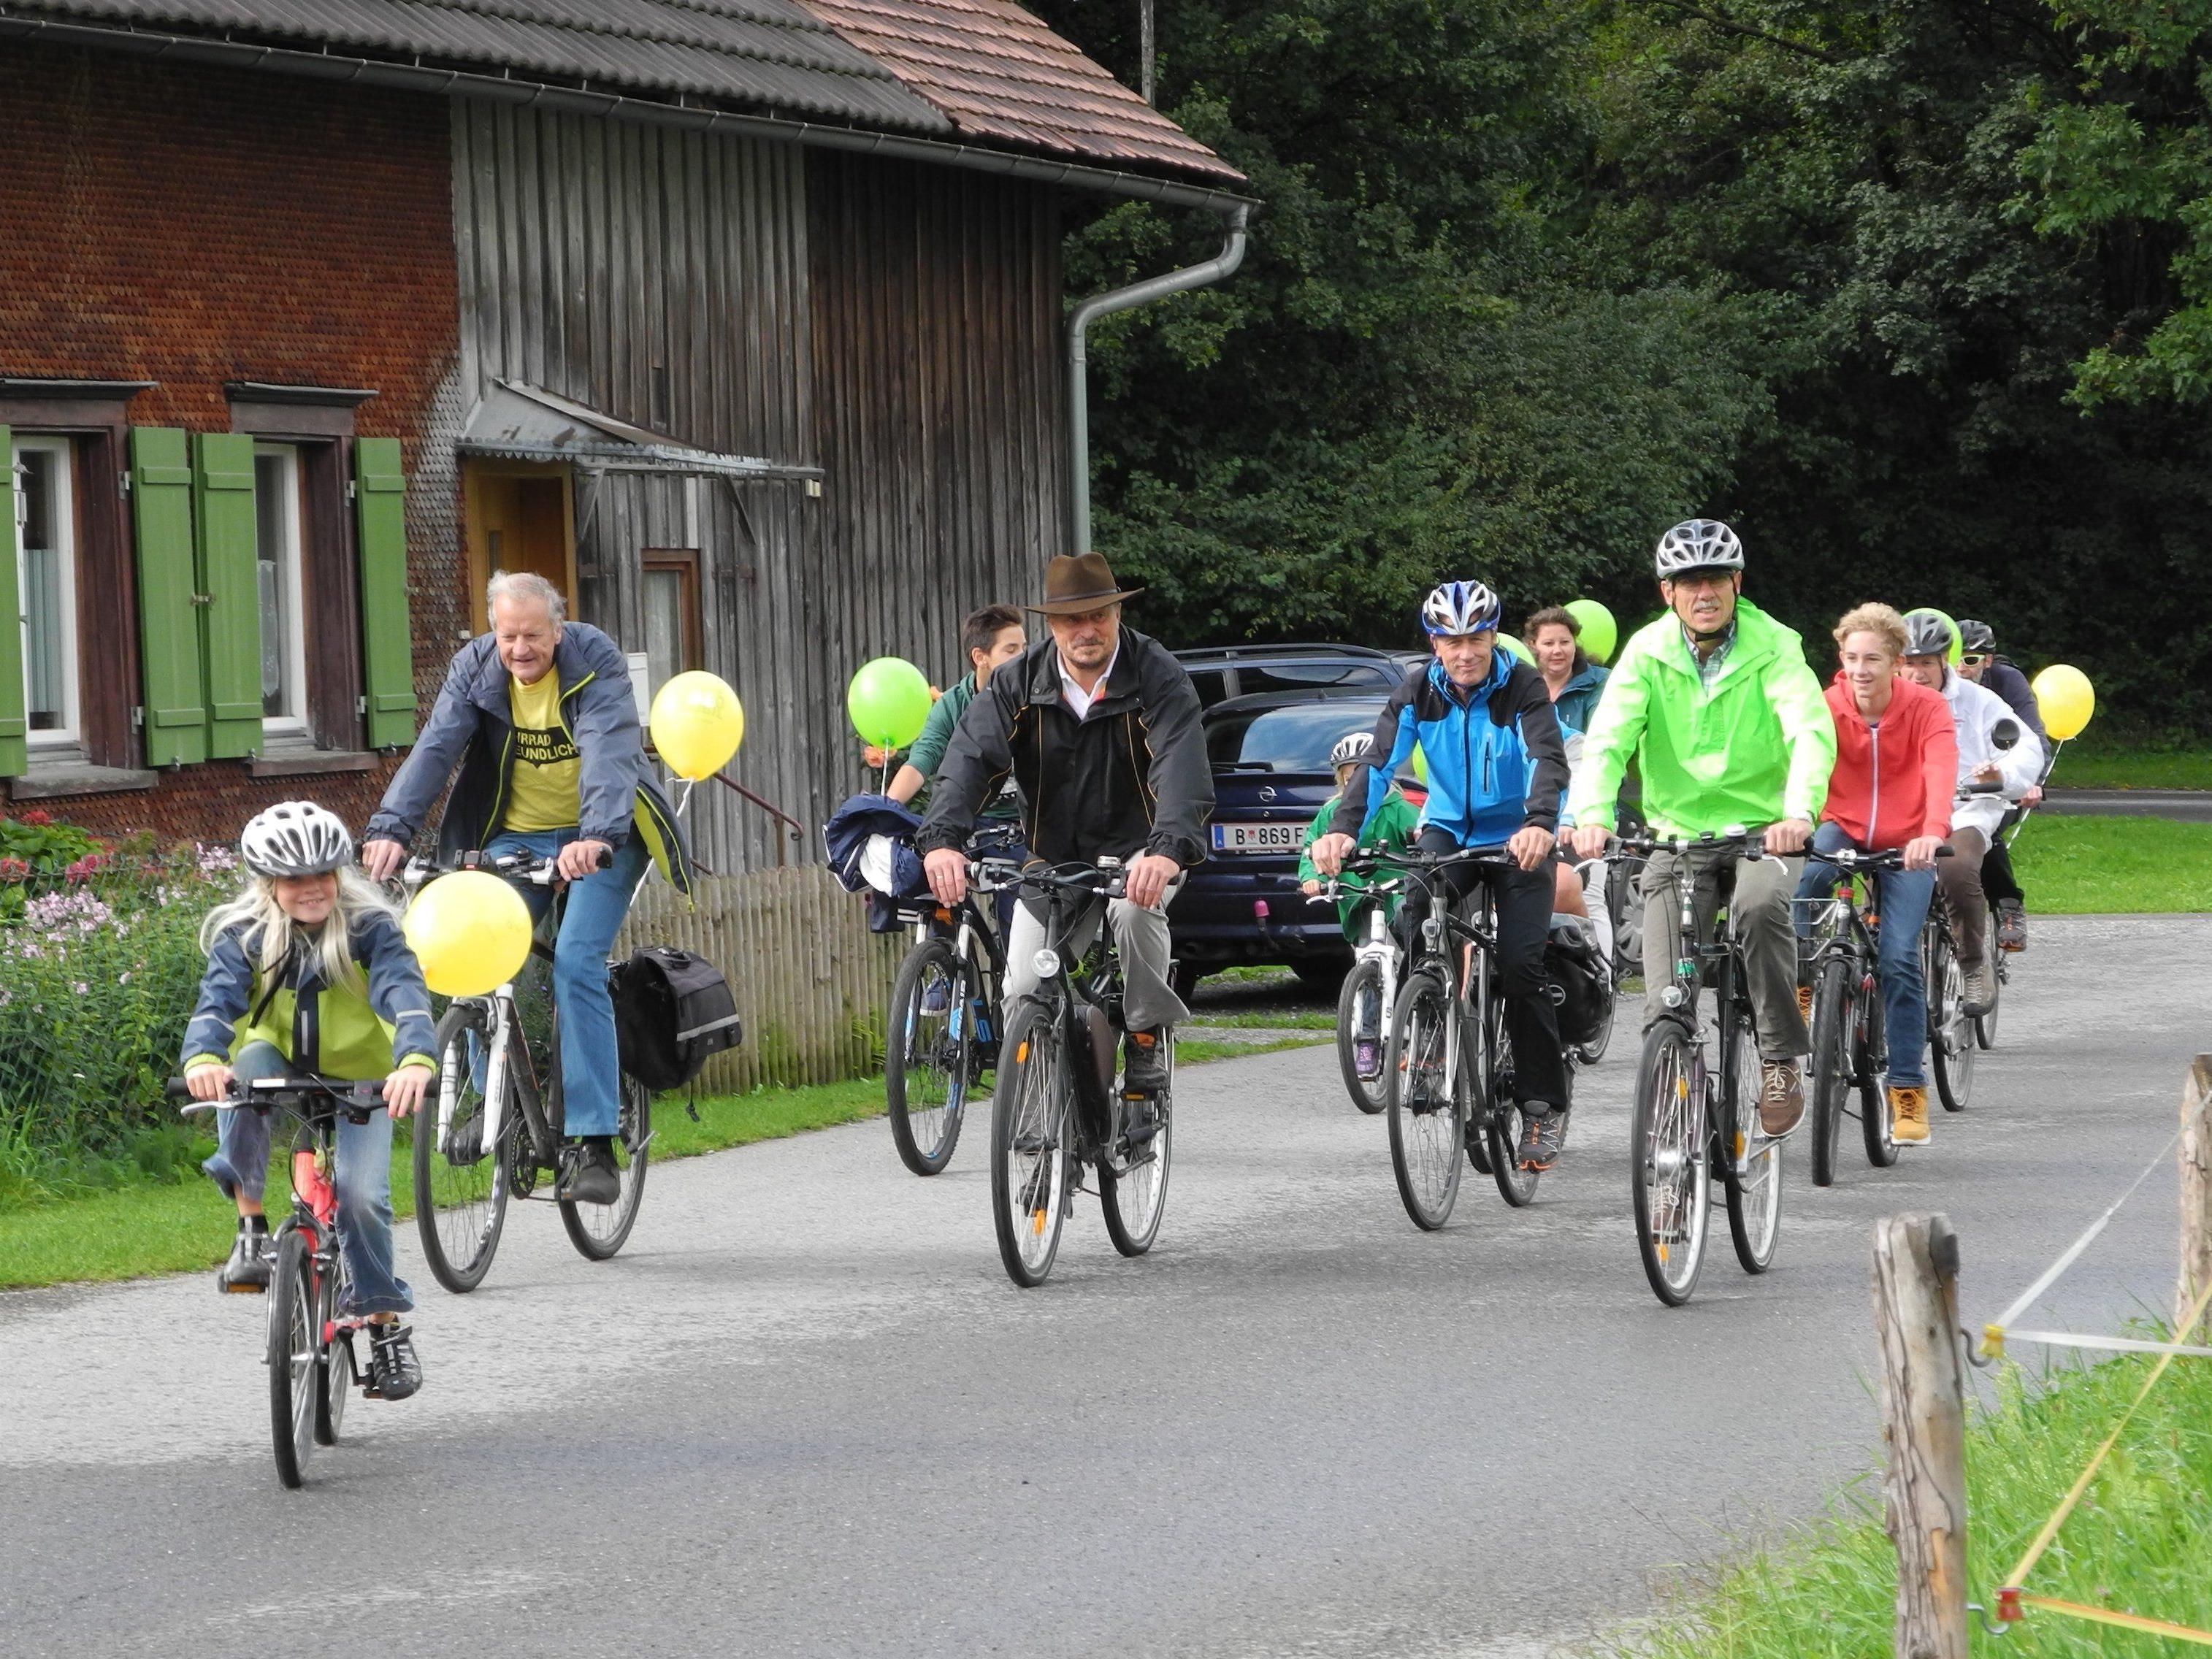 Sportlich fit zeigten sich die Leiblachtaler bei der diesjährigen Fahrrad-Parade mit Preisverlosung des Fahrradwettbewerbs 2015.